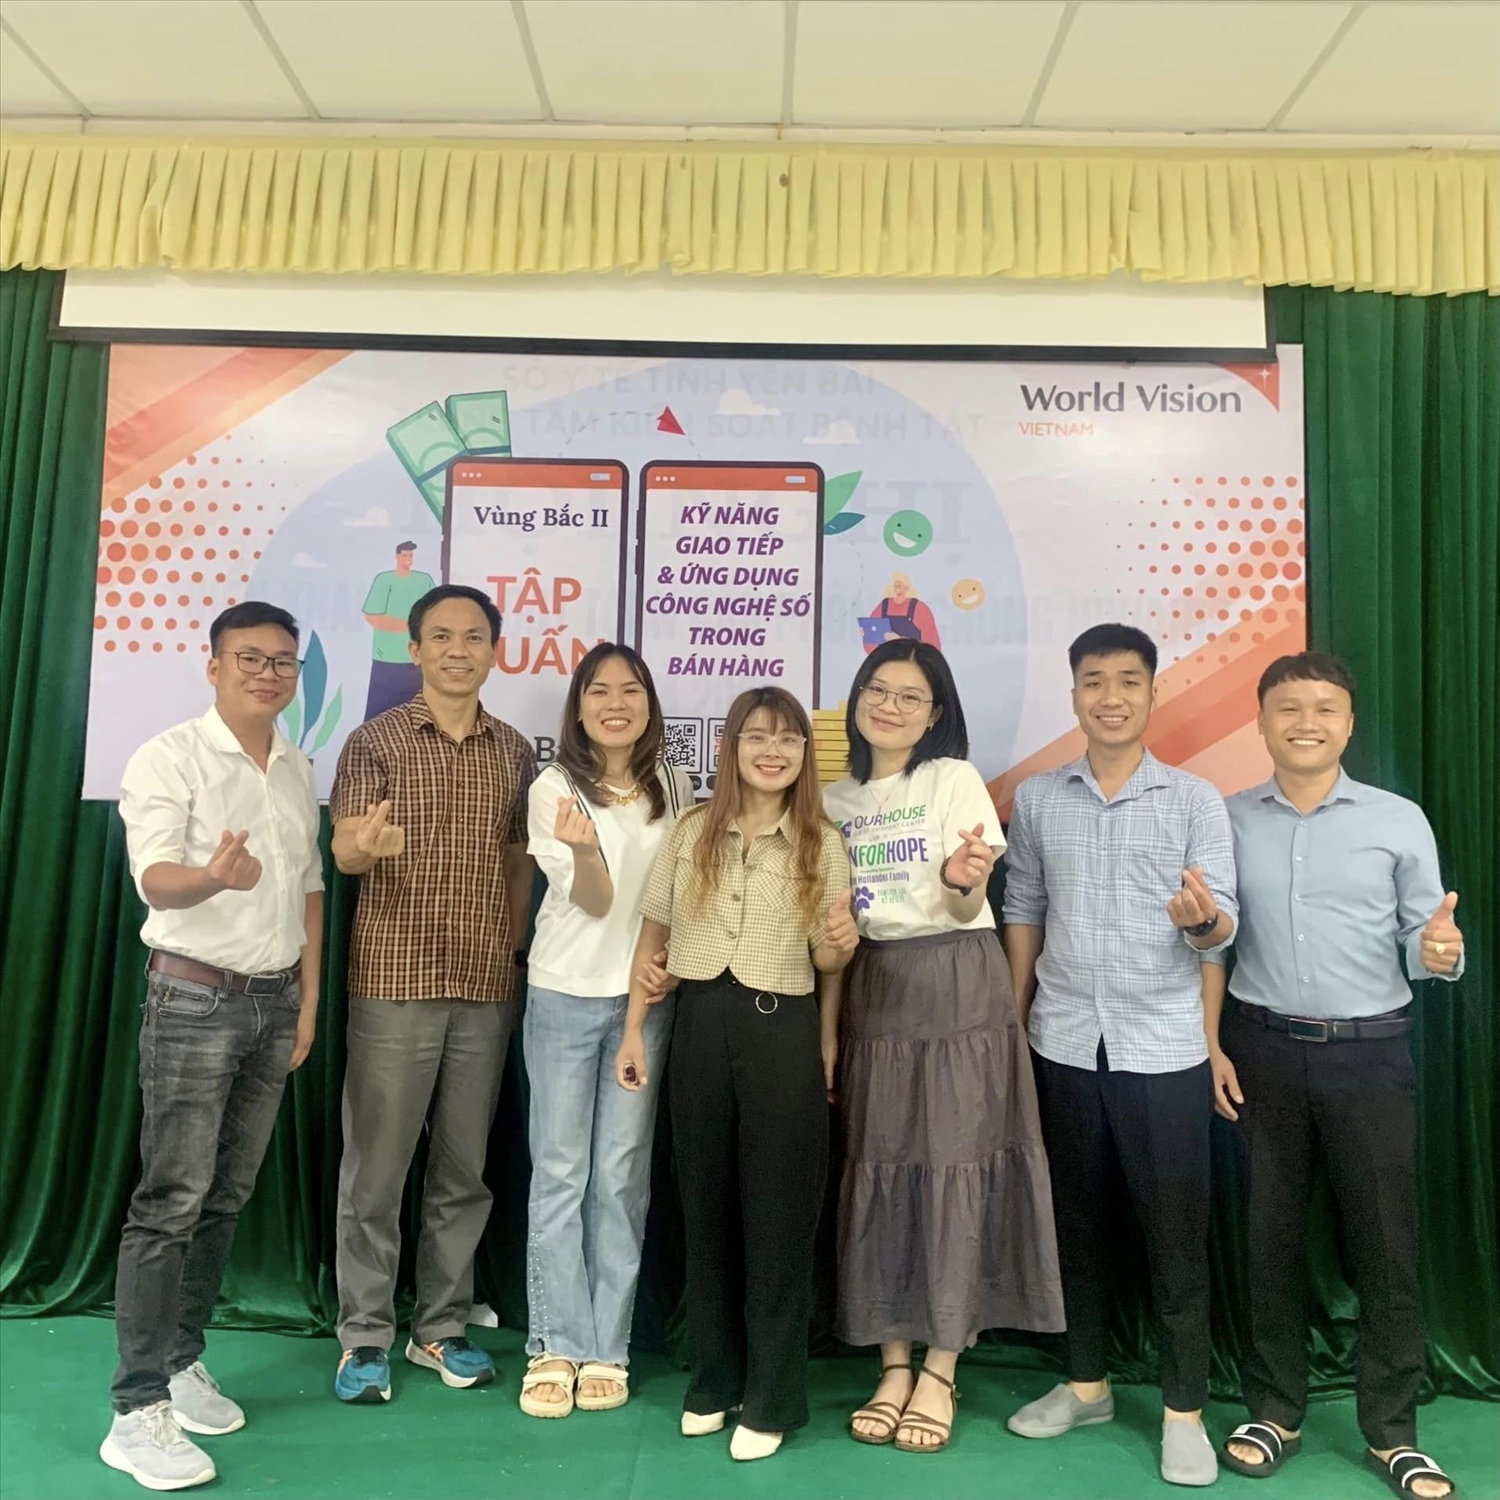 Chảo Yến là 1 trong 2 tập huấn viên trong chuỗi tập huấn cho nhóm sinh kế ở 4 vùng dự án được tổ chức tại Mộc Châu, Quảng Trị, TP.HCM và Yên Bái